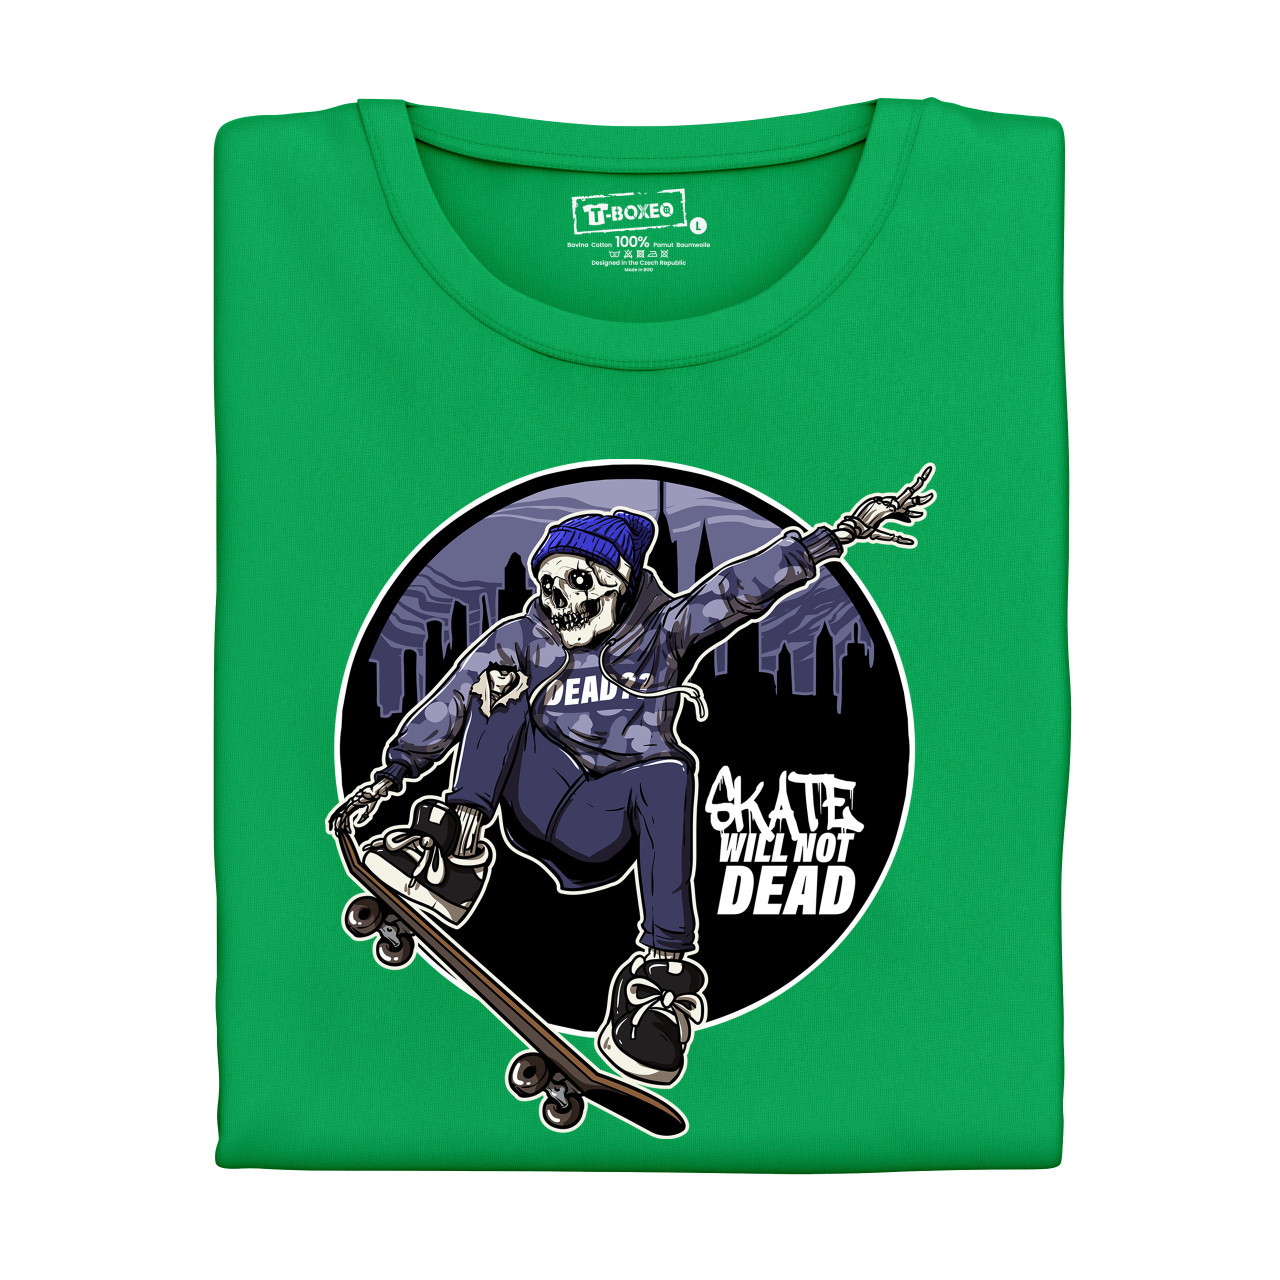 Pánské tričko s potiskem “Skate Will Not Dead"